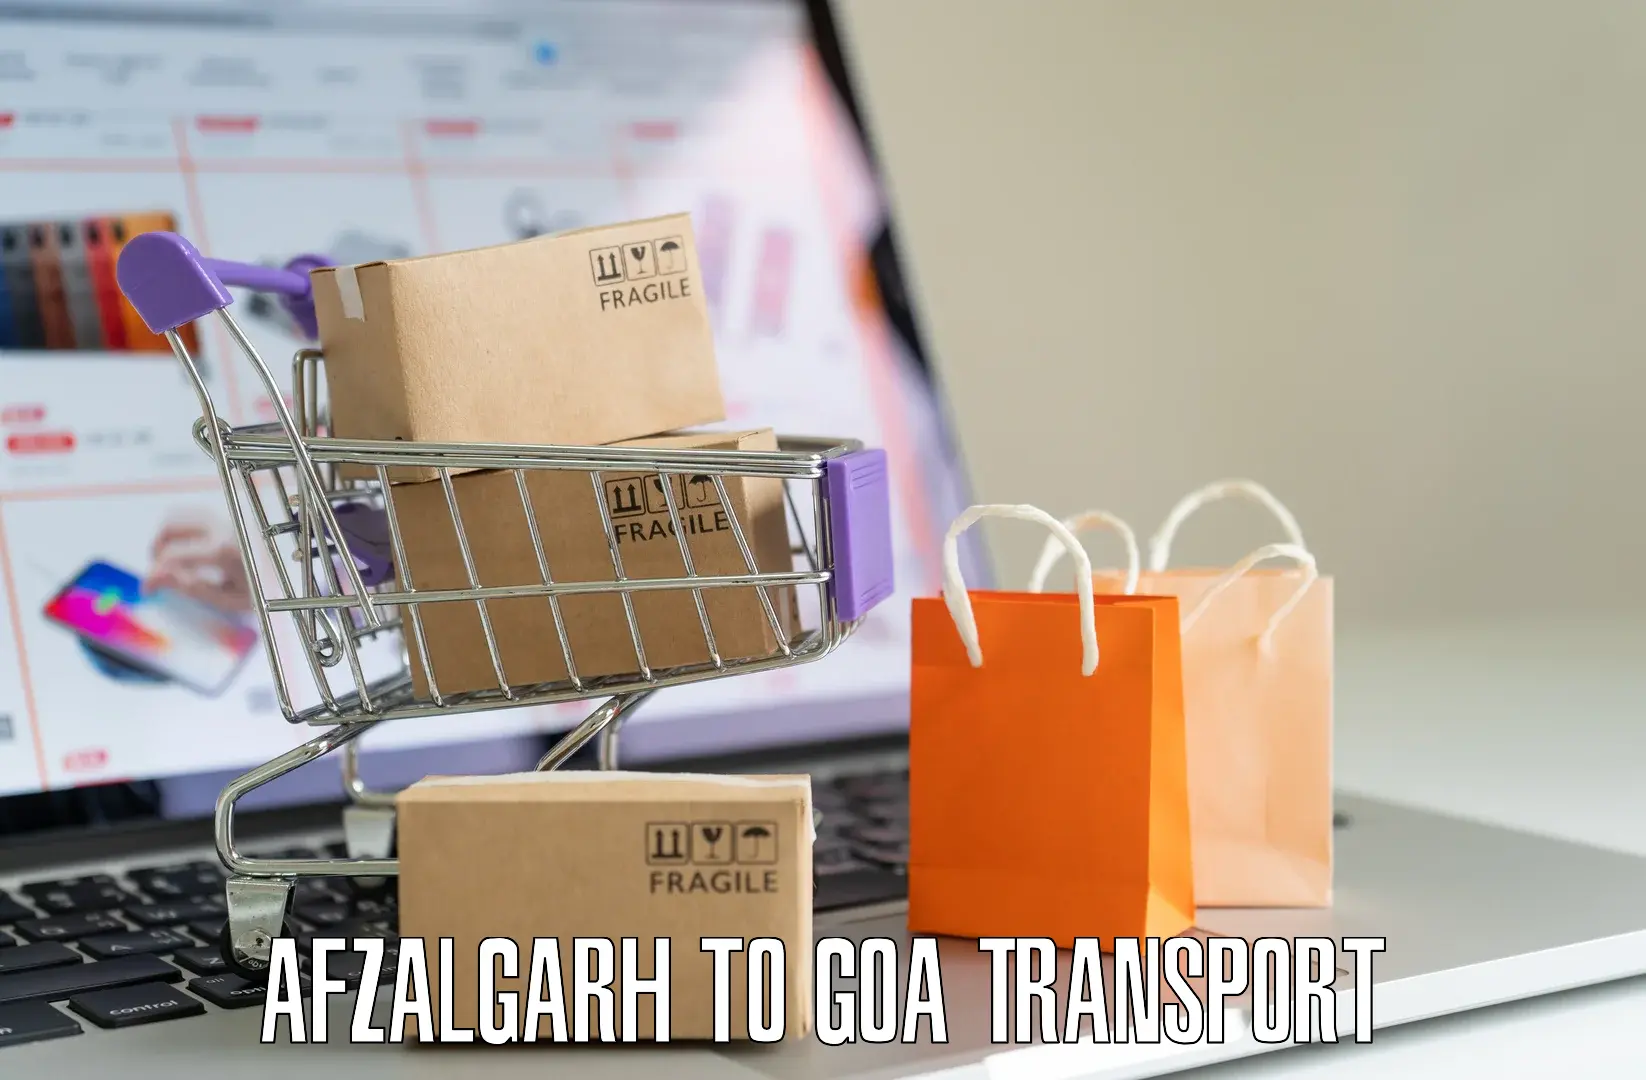 Bike transport service Afzalgarh to Mormugao Port